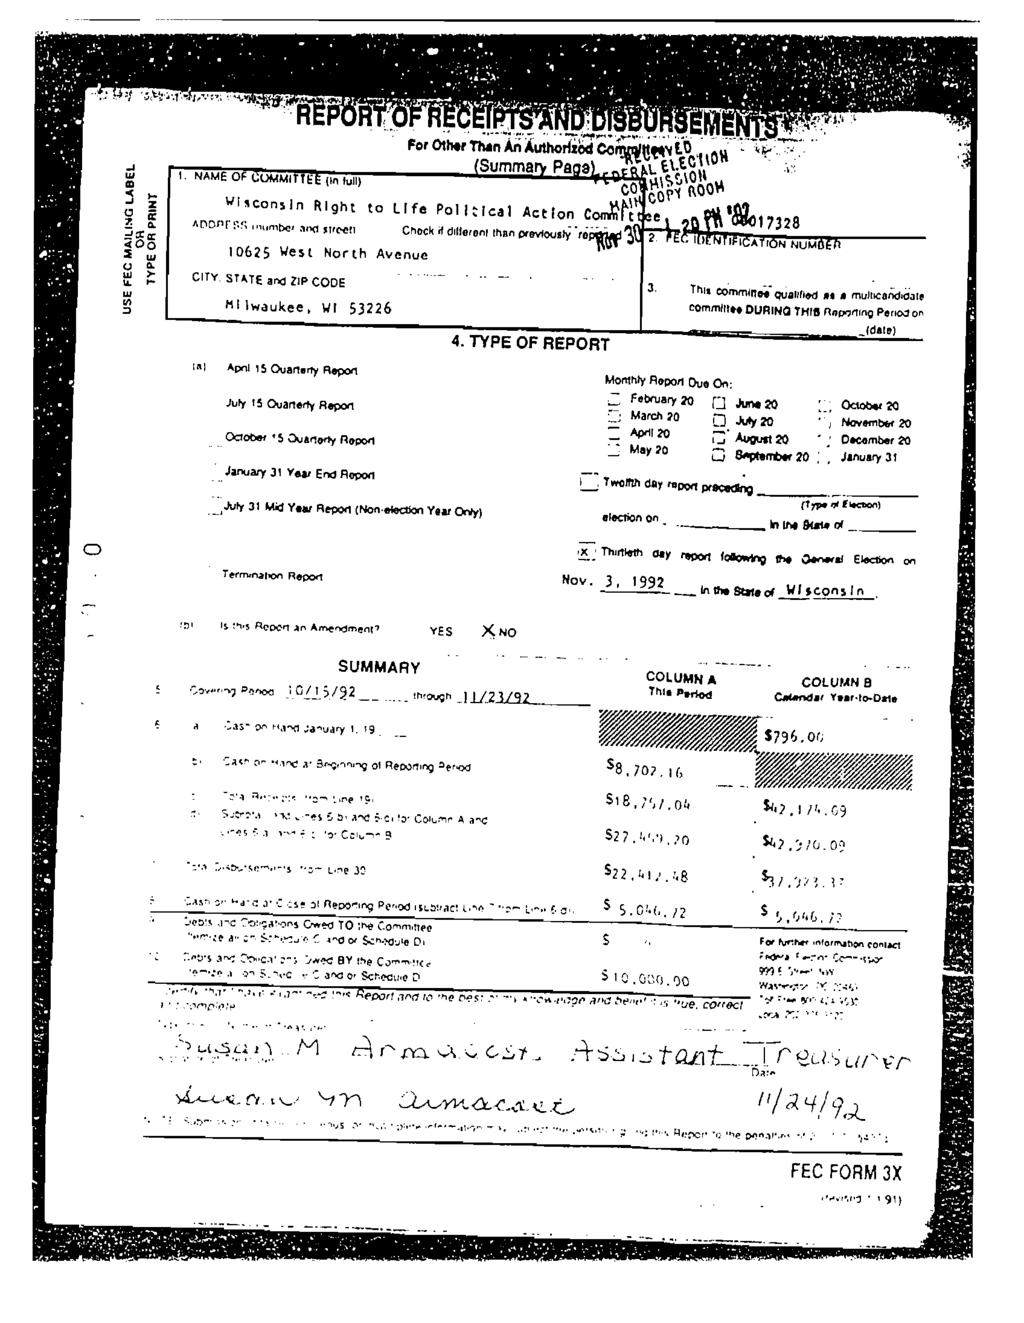 Case 1:04-cv-01260-RJL-RWR Document